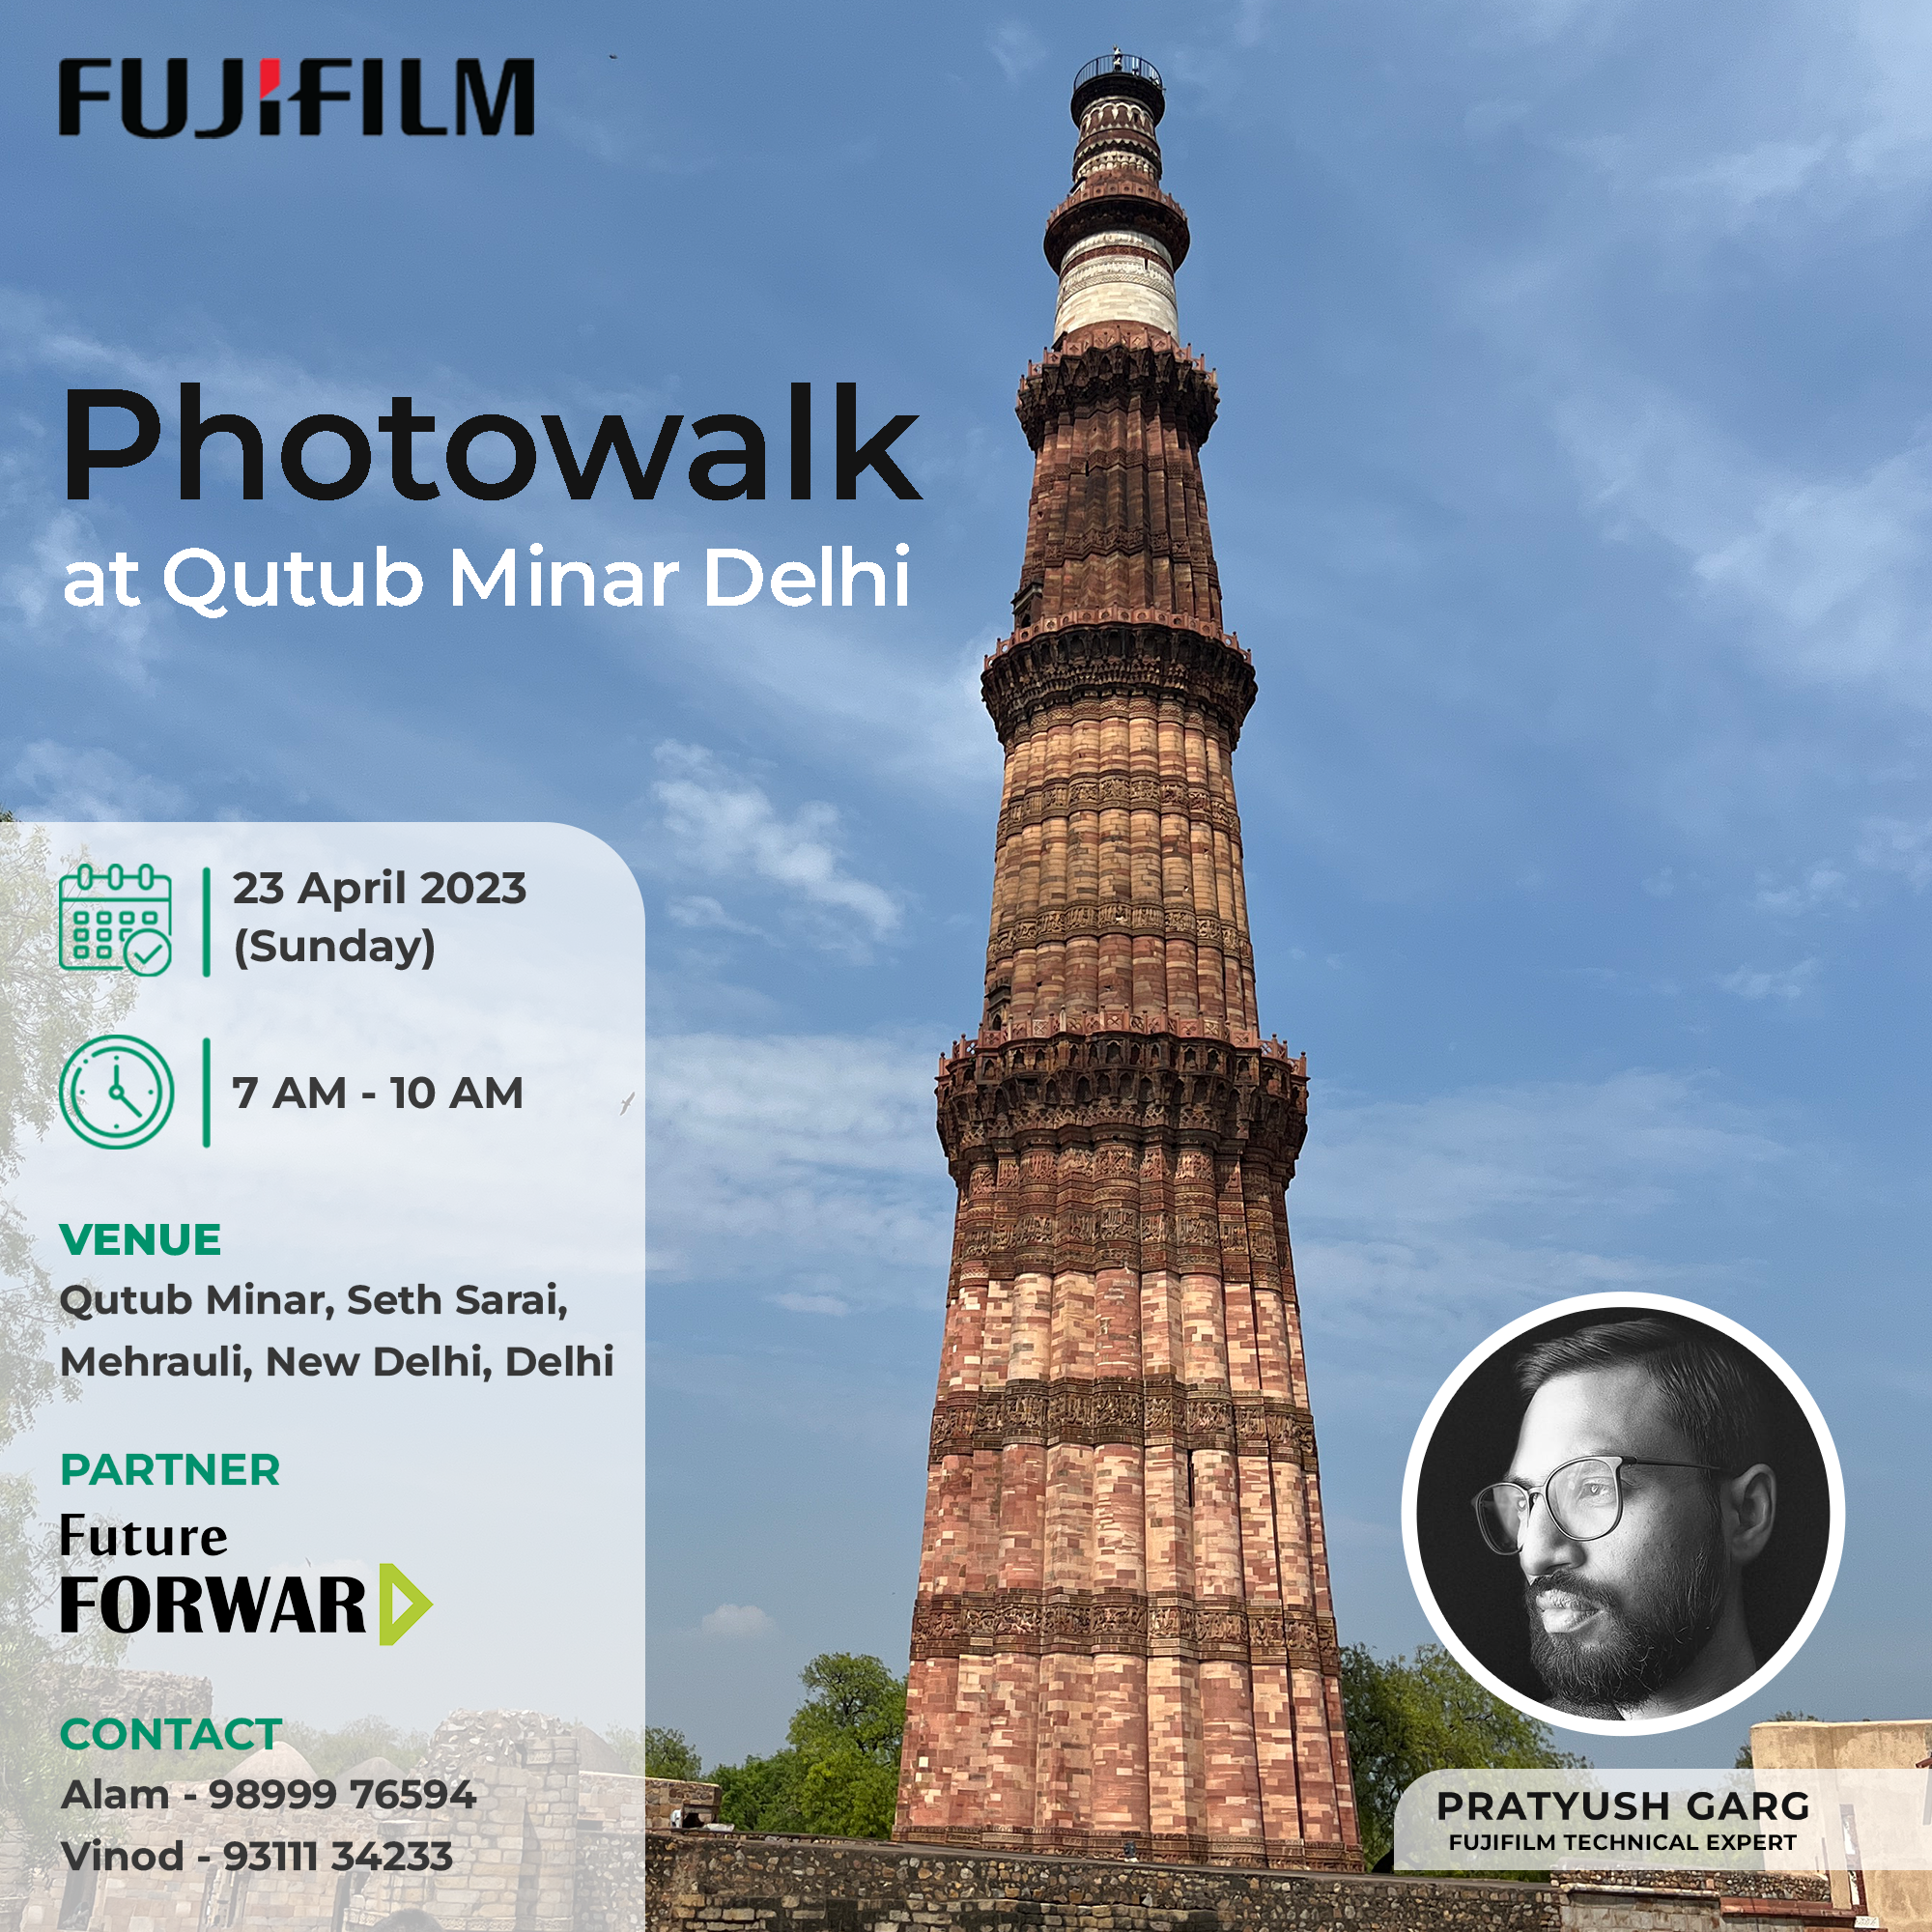 Photowalk at Qutub Minar Delhi